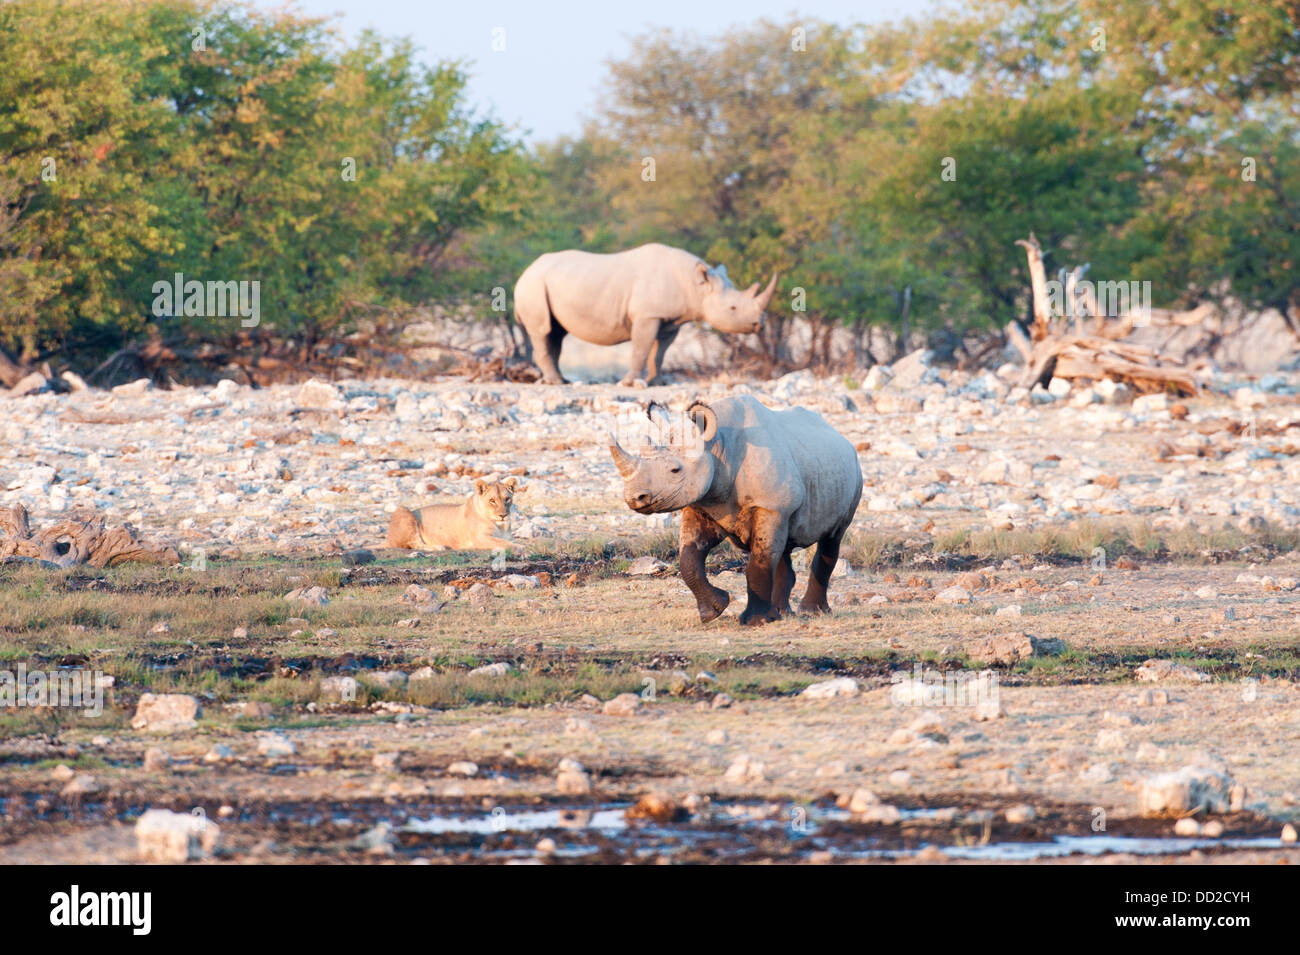 Dos rinocerontes negros (Diceros bicornis), una marcha y una leona (Panthera leo), viendo, Parque Nacional de Etosha, Namibia Foto de stock